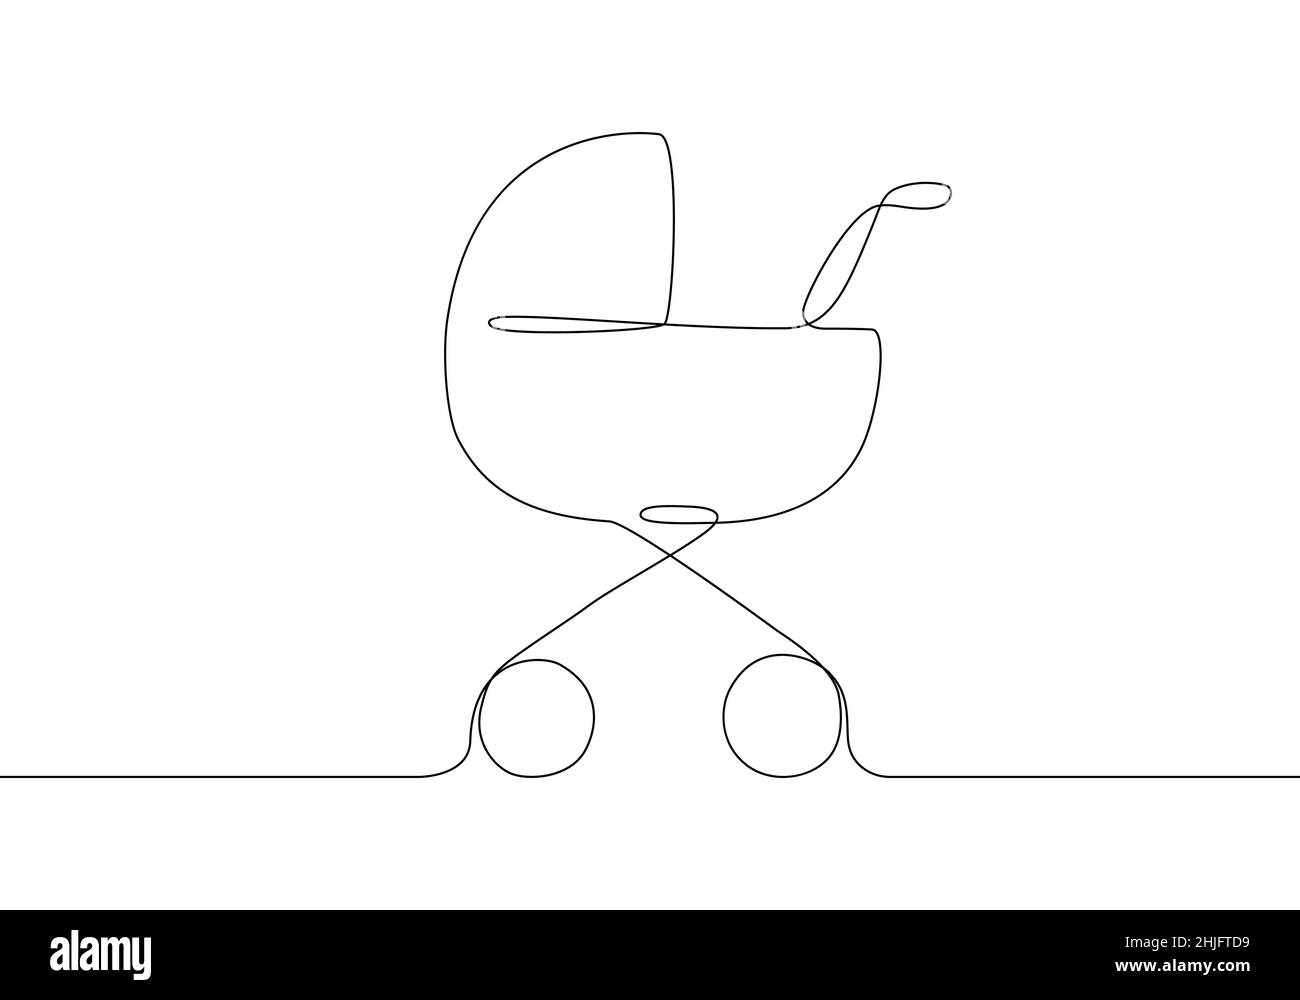 Ligne continue du chariot de bébé. Illustration vectorielle bébé bébé bébé bébé bébé bébé bébé bébé bébé isolé sur fond blanc. Illustration de Vecteur